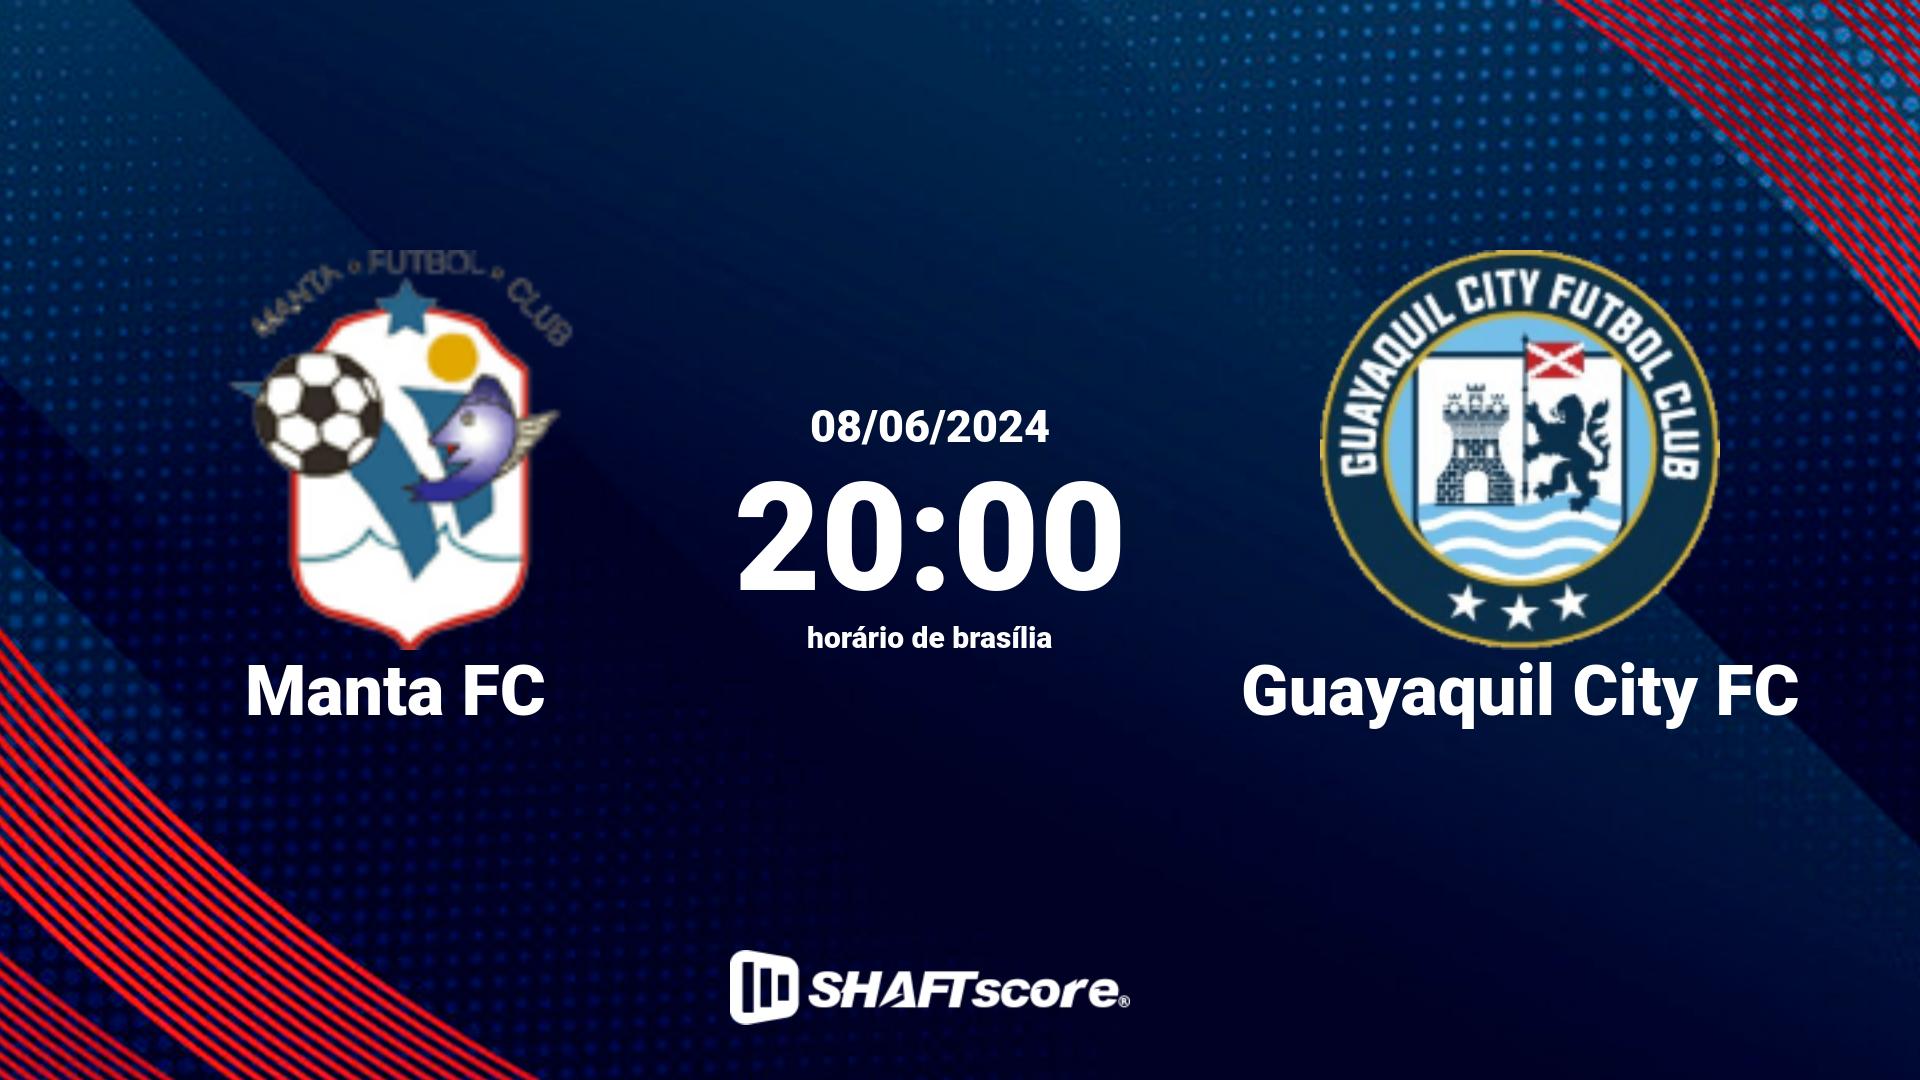 Estatísticas do jogo Manta FC vs Guayaquil City FC 08.06 20:00